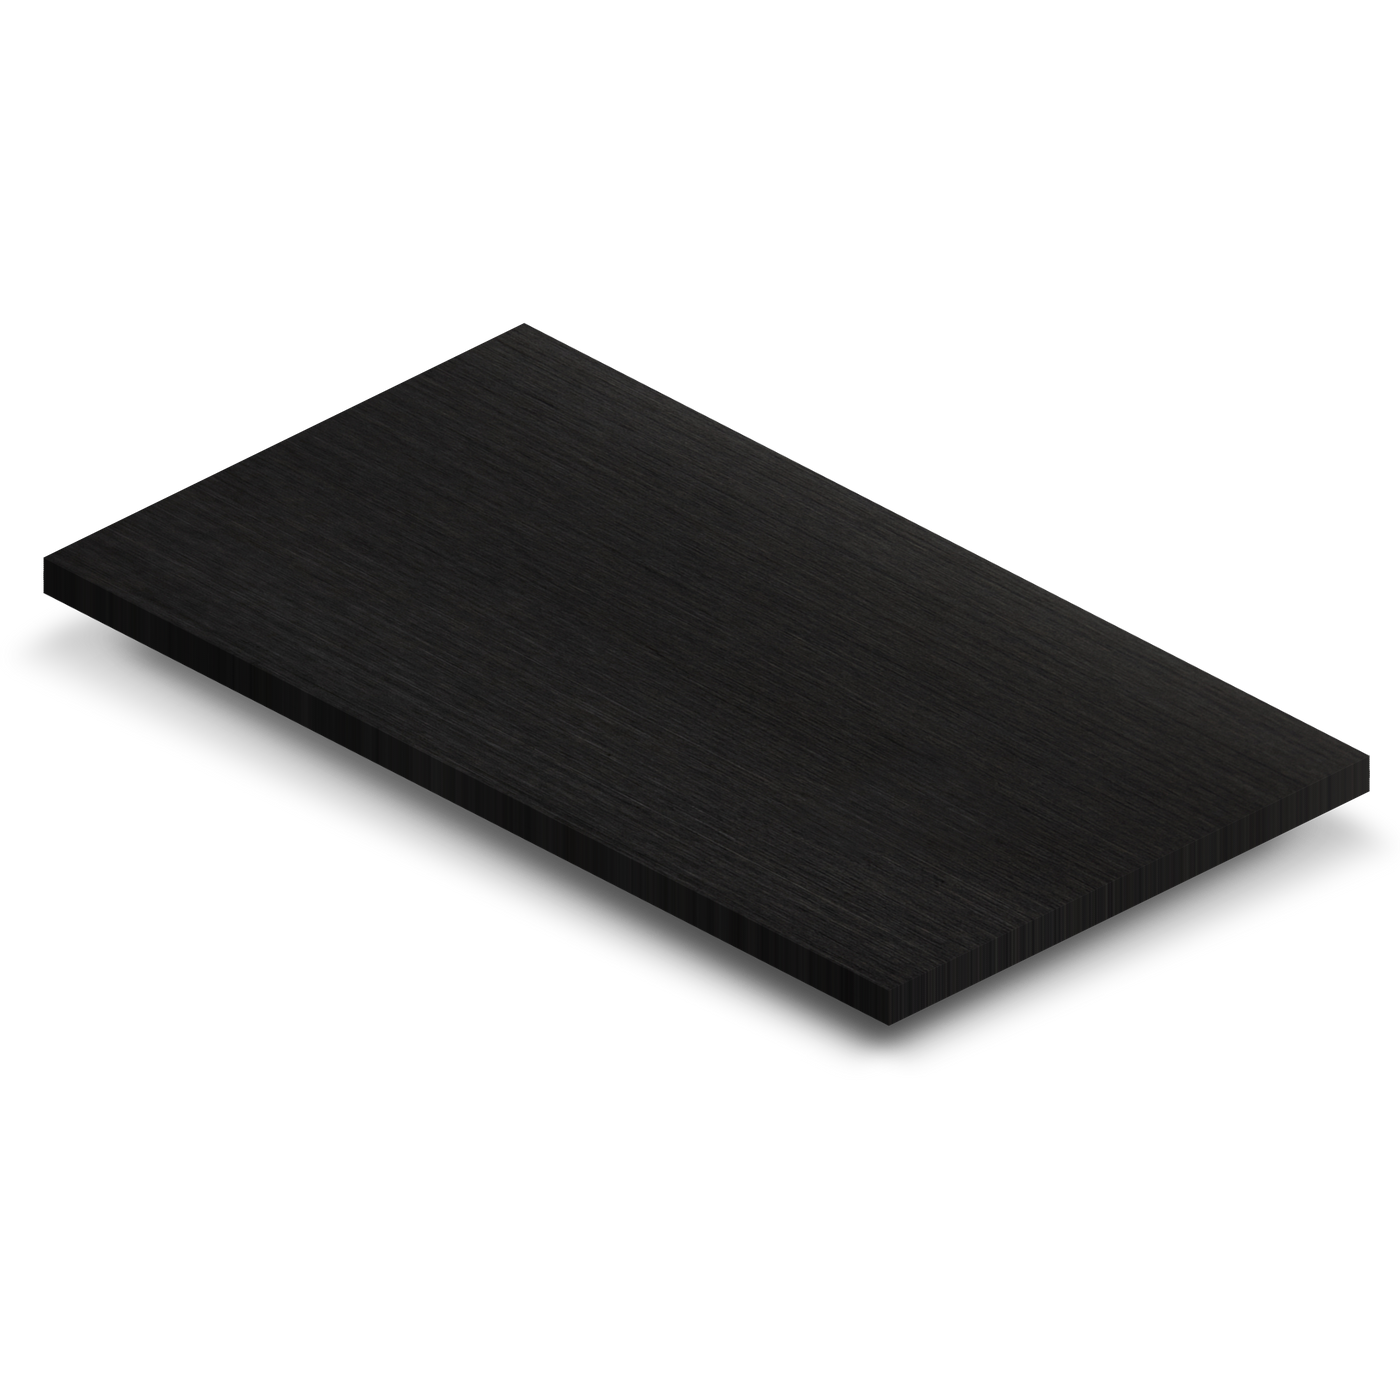 3 x 5 Black Stainless Steel Sample (CS-BS)